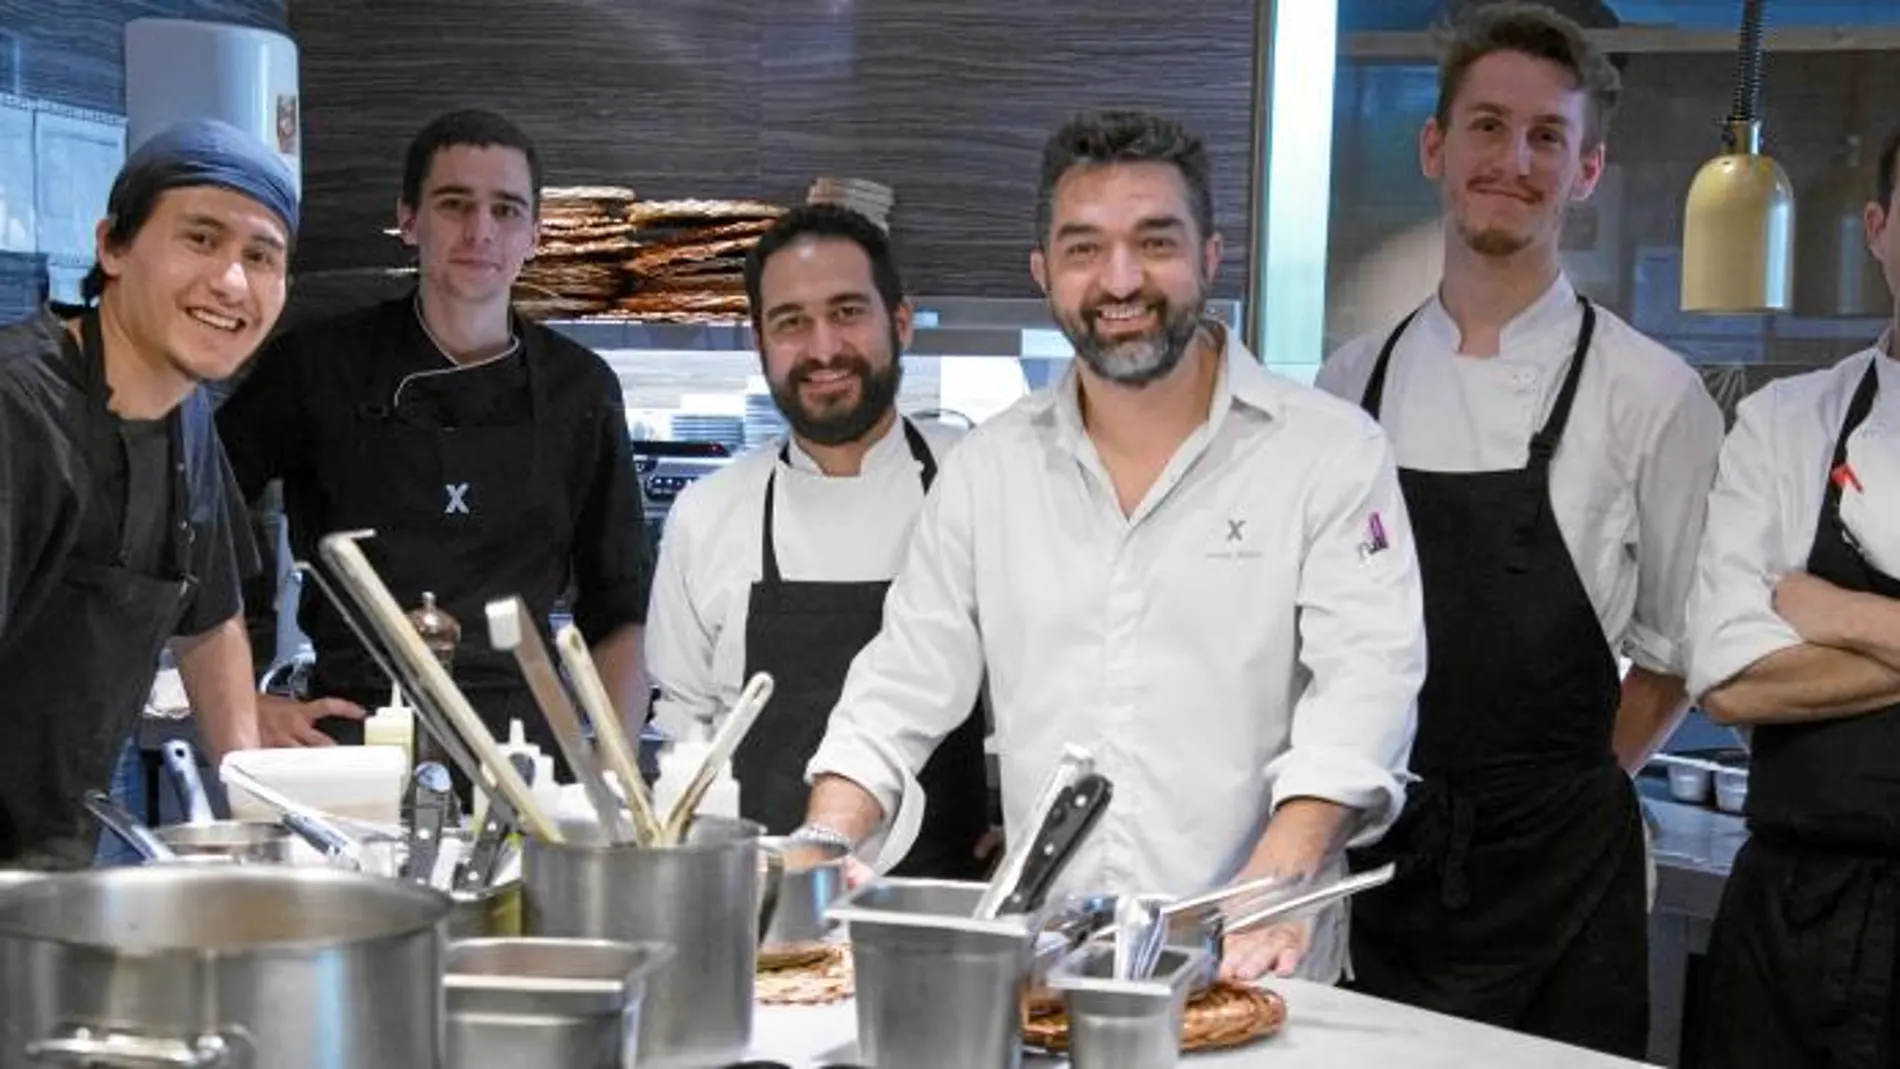 El restaurante barcelonés ofrece una propuesta innovadora que fusiona la cocina mexicana, la brasa y la dieta mediterránea.